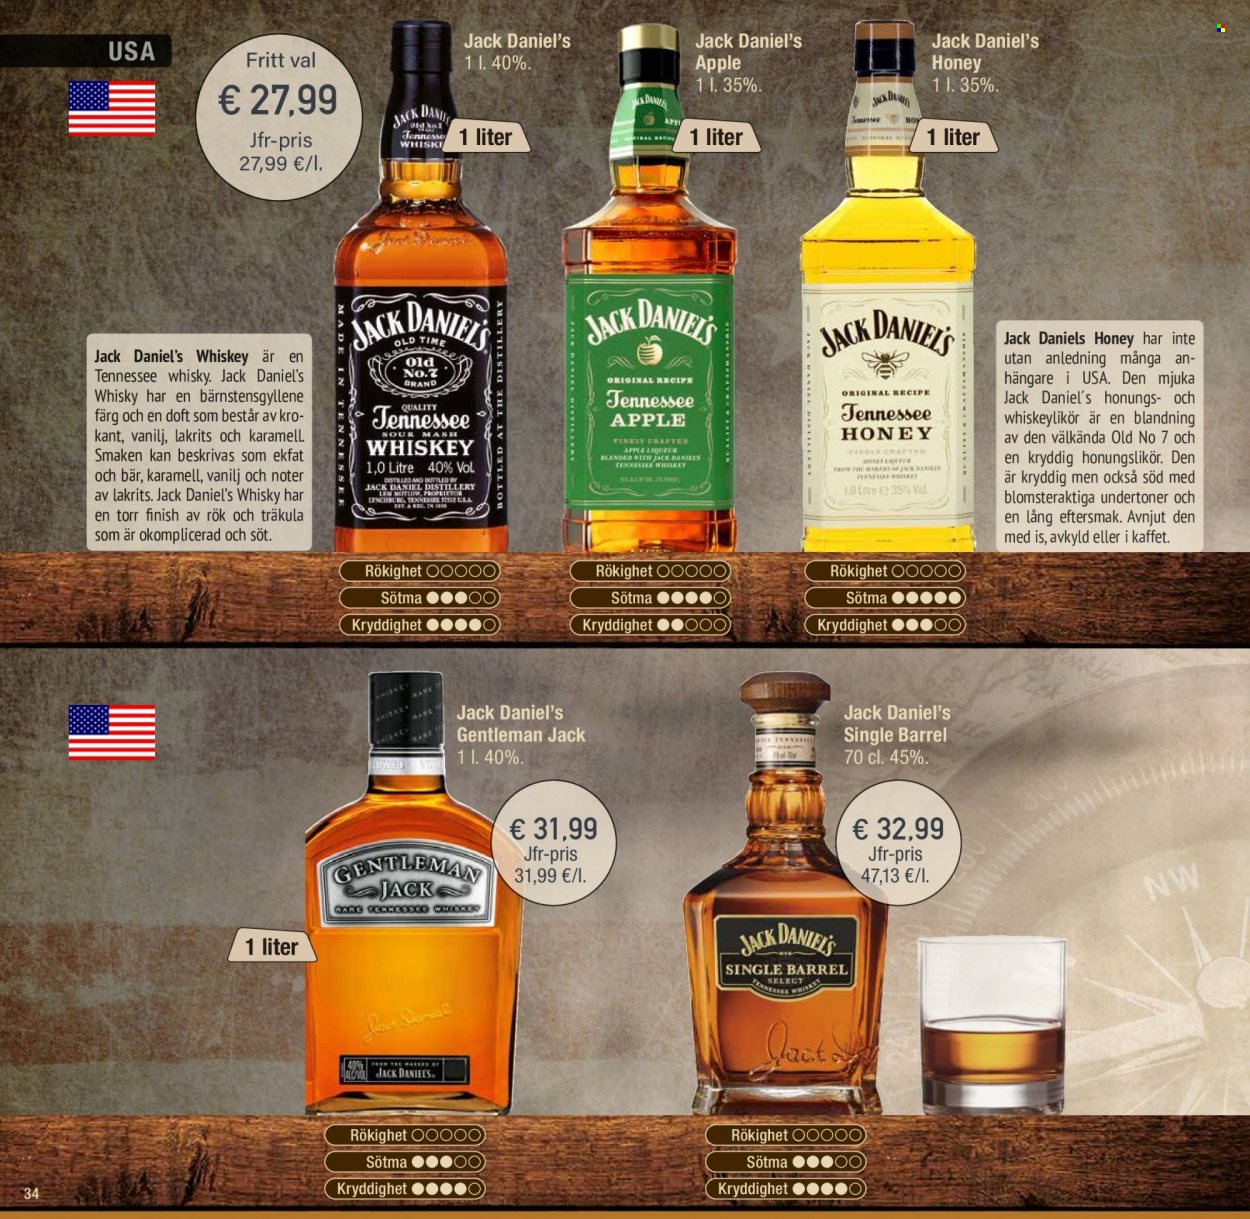 Calle tilbud  - 23.03.2022 - 31.12.2022 - tilbudsprodukter - Jack Daniel's, whisky. Side 34.